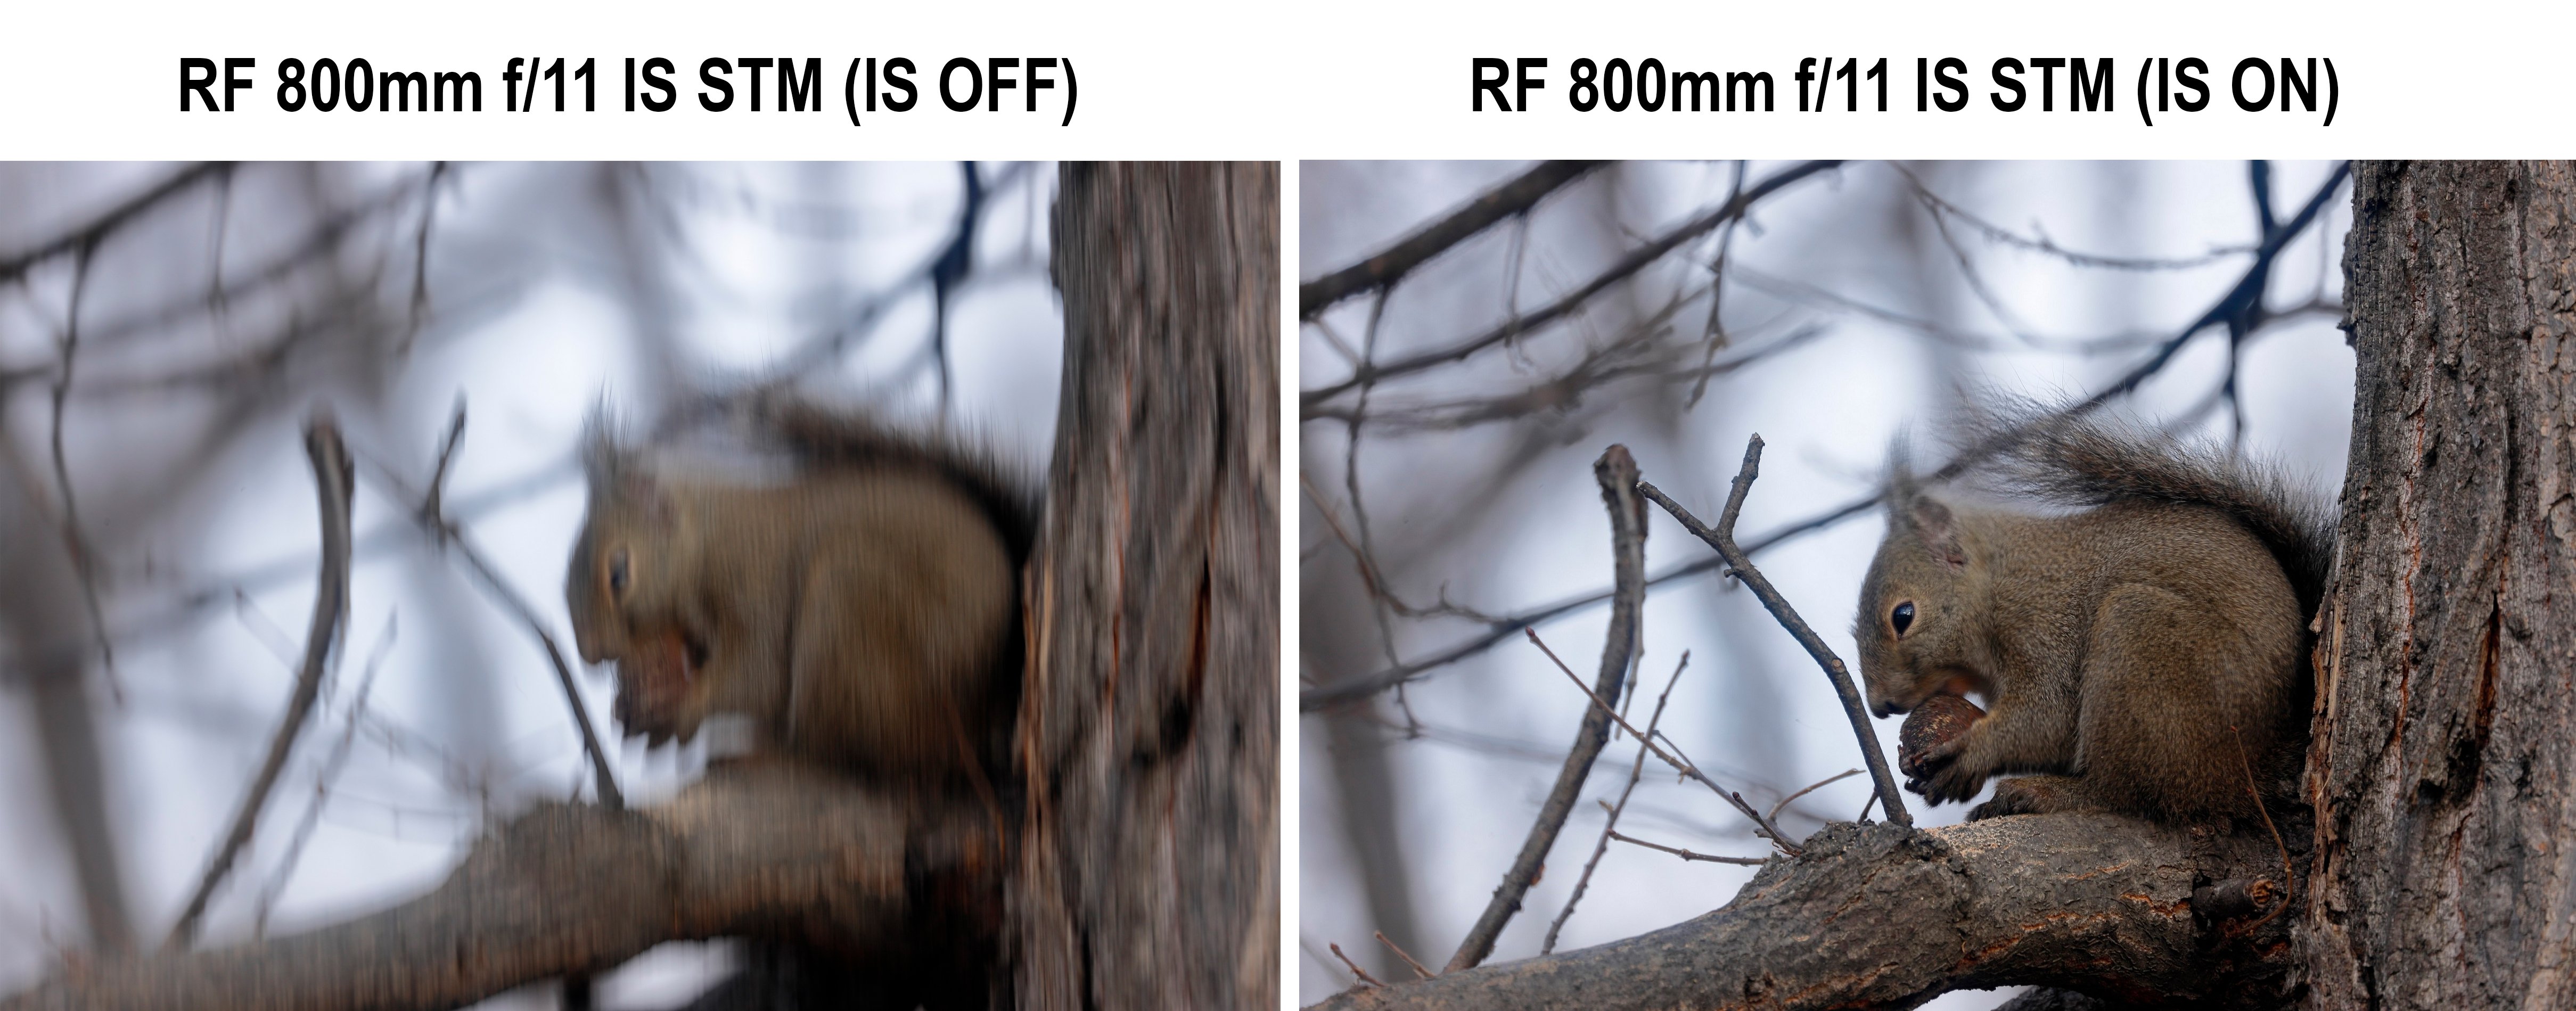 Ống kính Canon RF 800mm f11 IS STM - Chống rung quang học